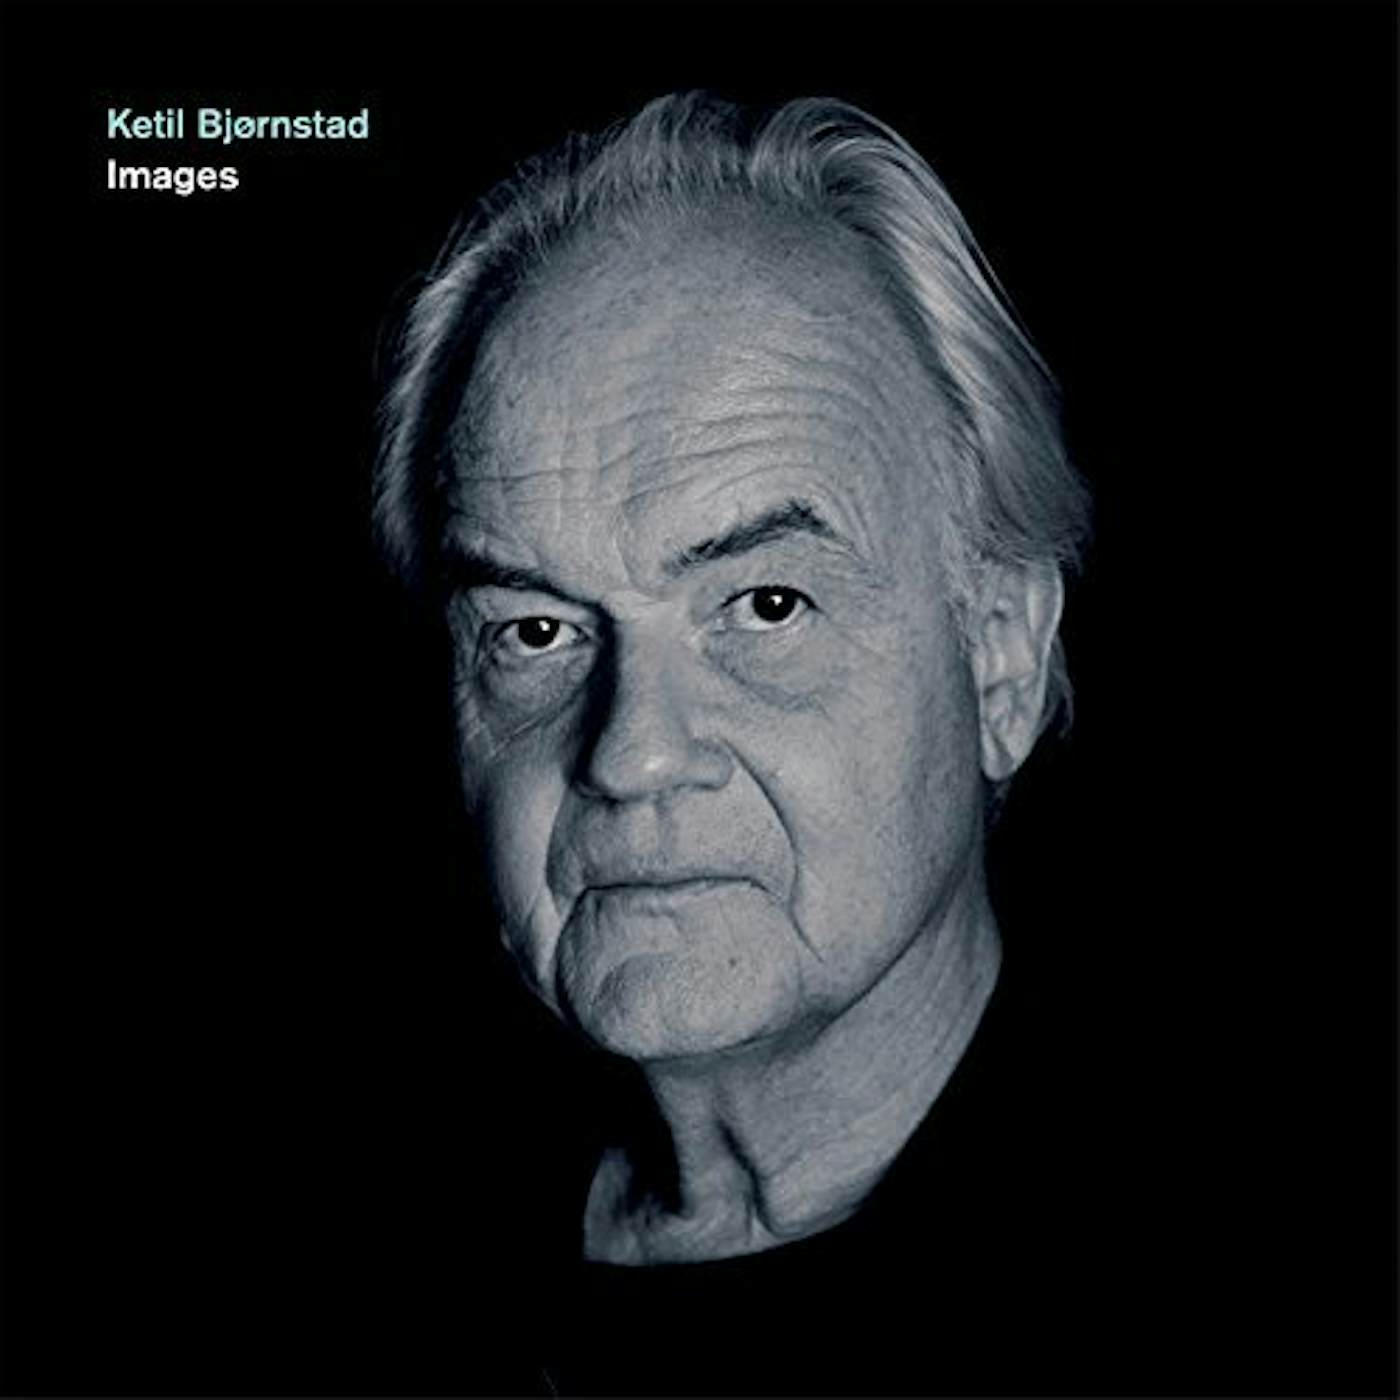 Ketil Bjørnstad IMAGES CD